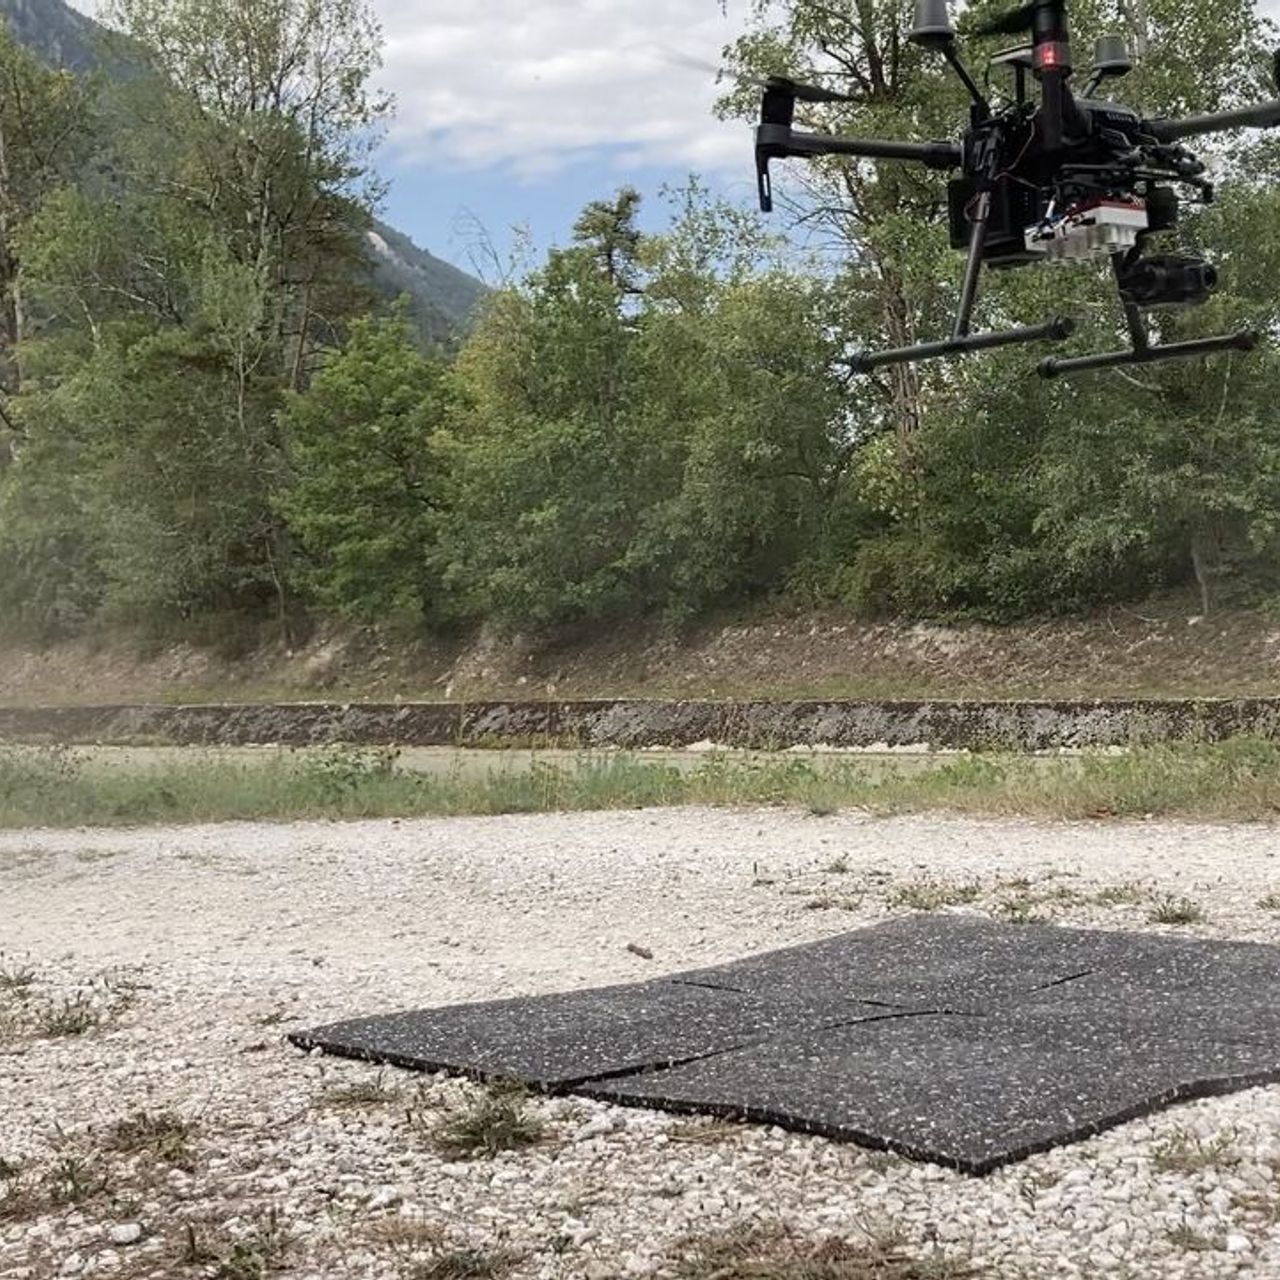 A pesquisadora Petra D'Odorico pilotando um drone no local de pesquisa florestal de Pfynwald em Valais no verão de 2020 (Foto Frederik BaumgartenWSL)